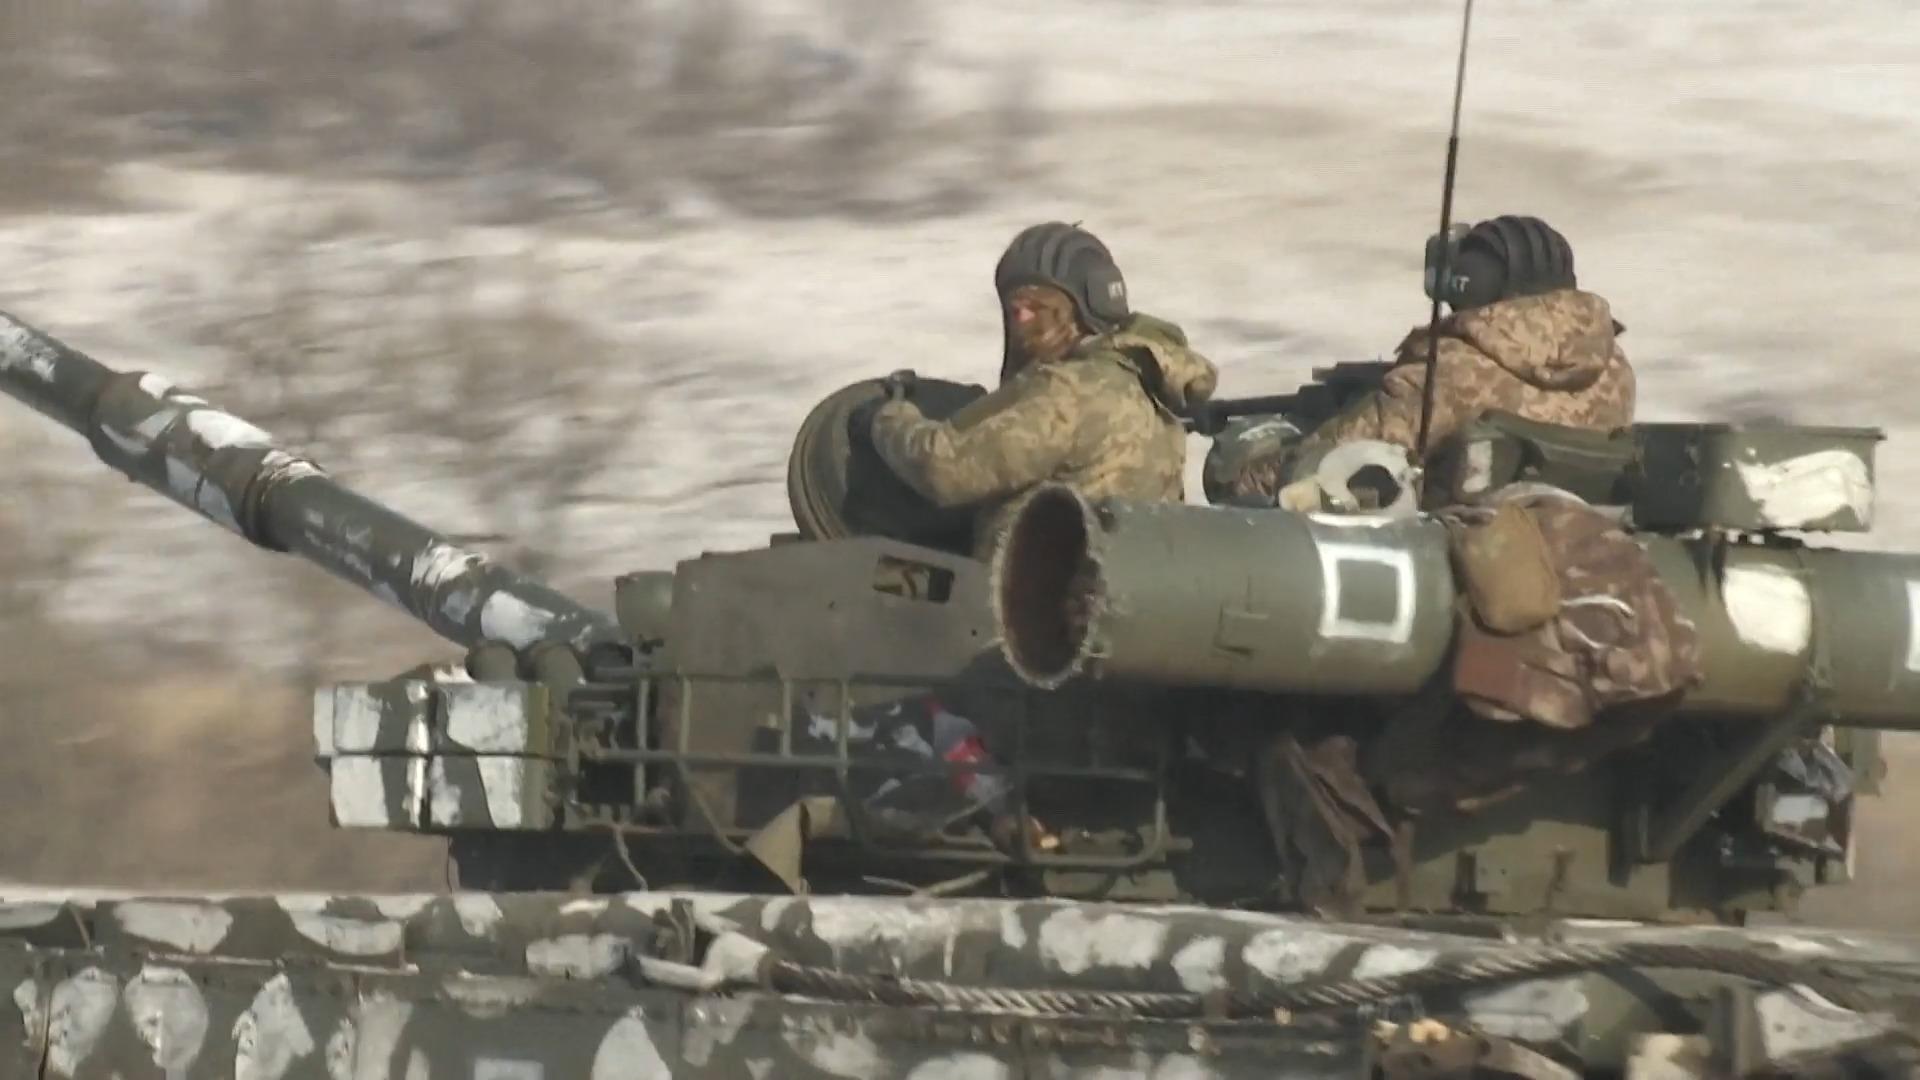 Überraschende Angriffe: Wie die Ukraine Panzer einsetzt Trupp kämpft mit erbeutetem Gerät